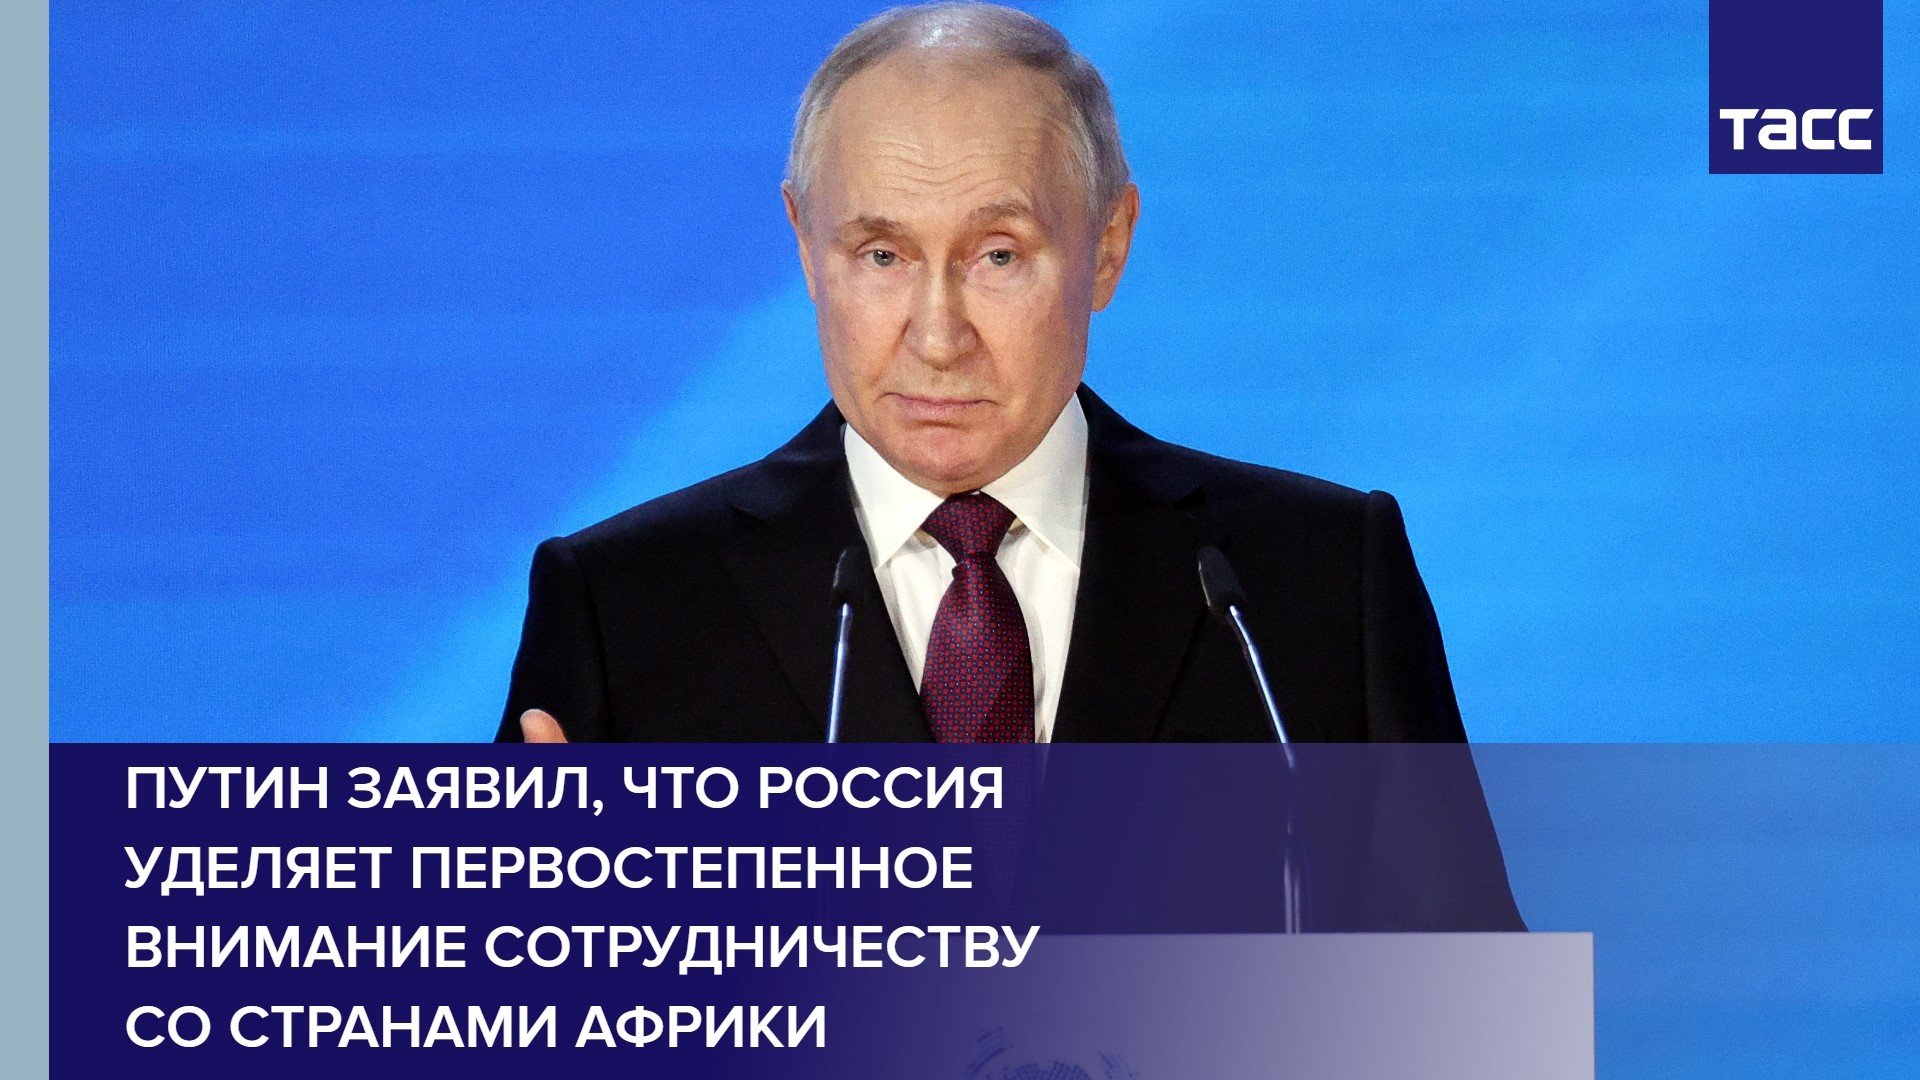 Путин заявил, что Россия уделяет первостепенное внимание сотрудничеству со странами Африки